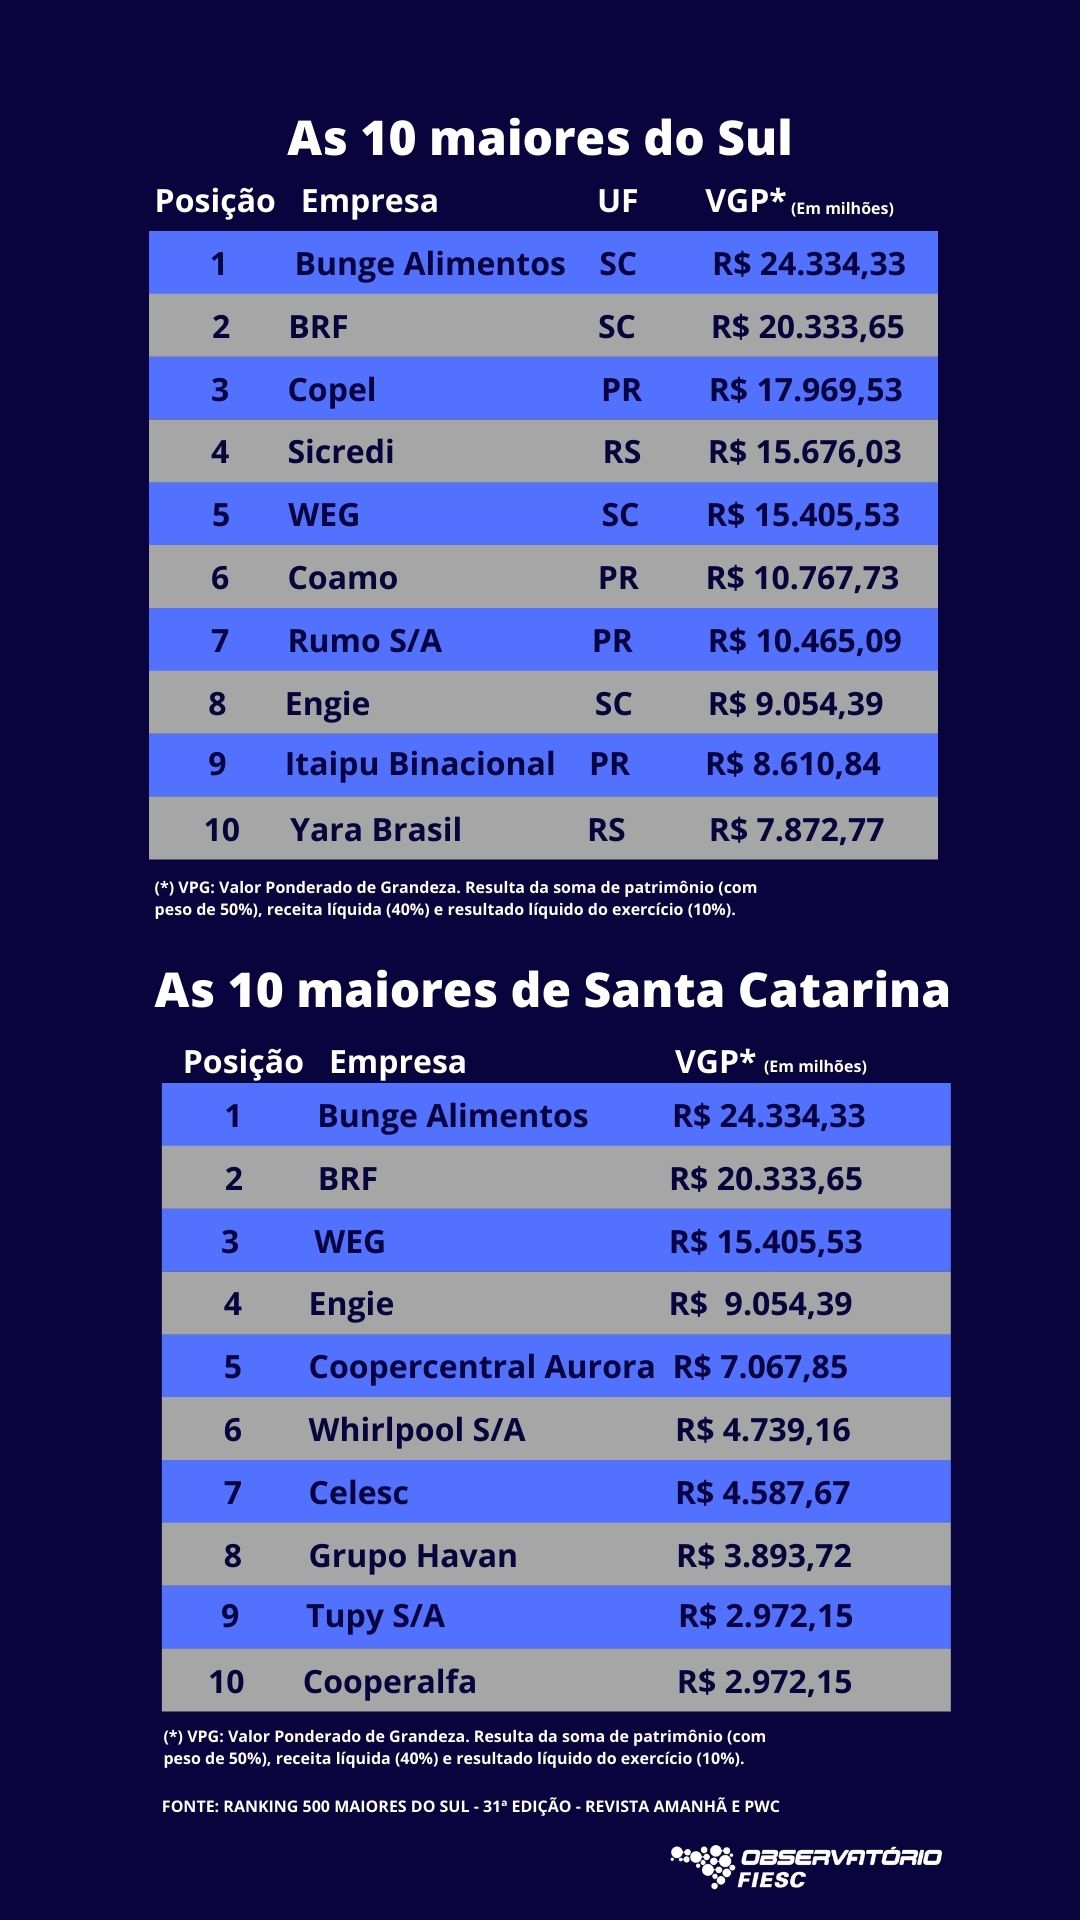 As 10 maiores empresas de Santa Catarina